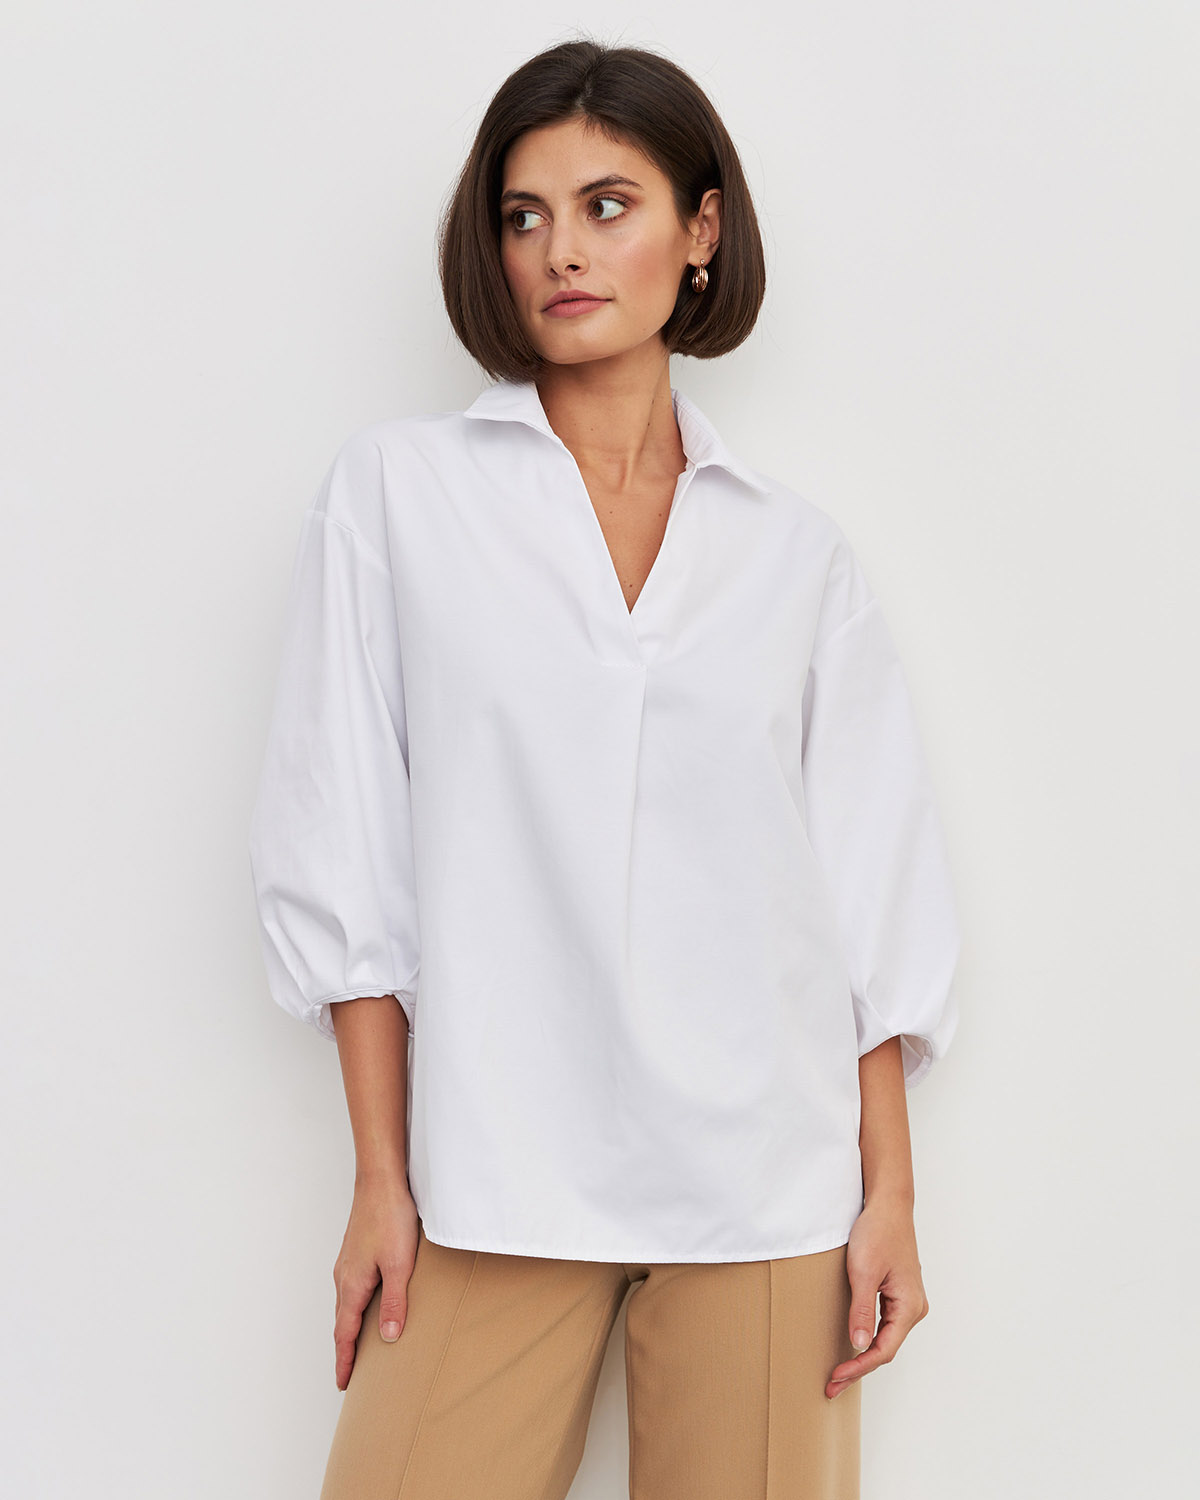 Рубашка женская LaVerita Р-002-1 белая 40 RU